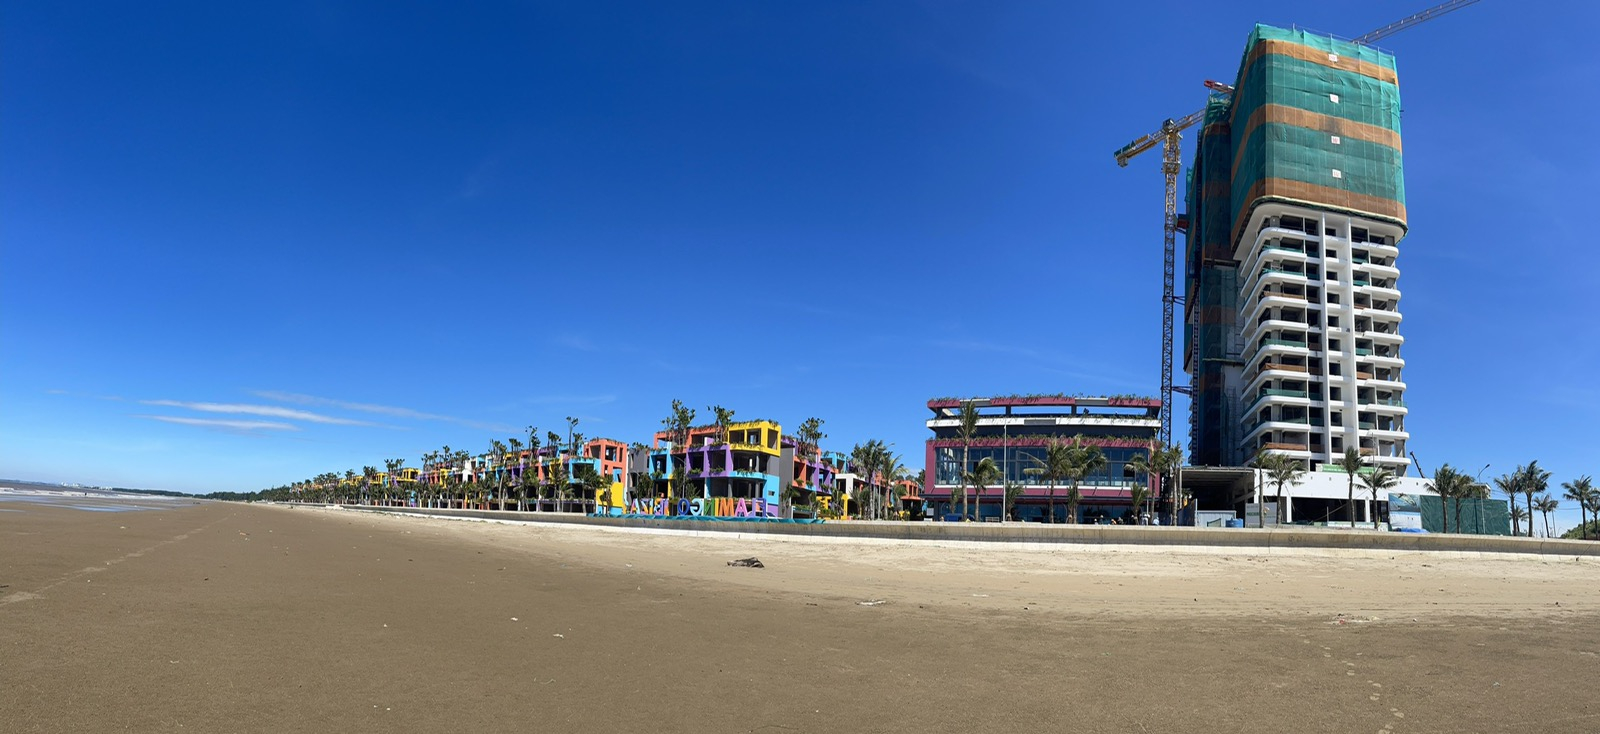 Toà Ibiza Party Resort và Trung tâm nghỉ dưỡng Bốn Mùa (ngoài cùng bên phải) đã hoàn thành những hạng mục quan trọng nhất, sẵn sàng đi vào hoạt động trong thời gian sắp tới. Ảnh: TT.